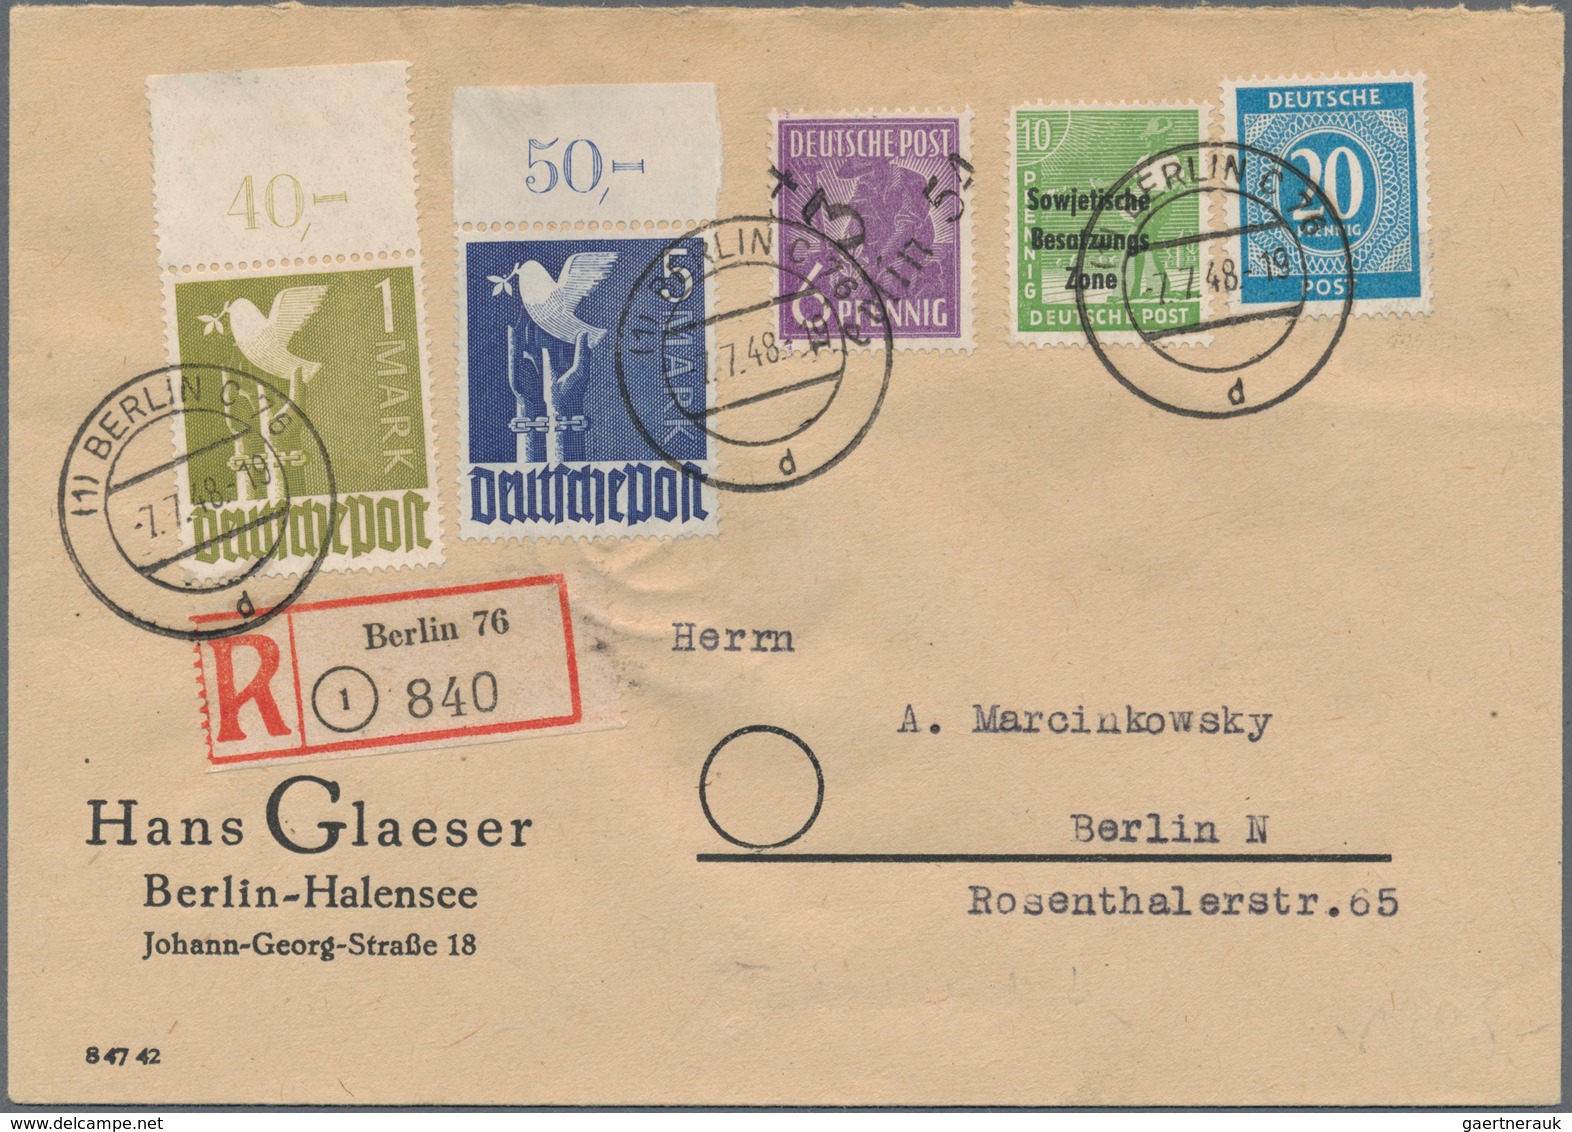 32198 Alliierte Besetzung - Gemeinschaftsausgaben: 1947-1948, Sammlung mit über 60 Briefen, dabei Einschre